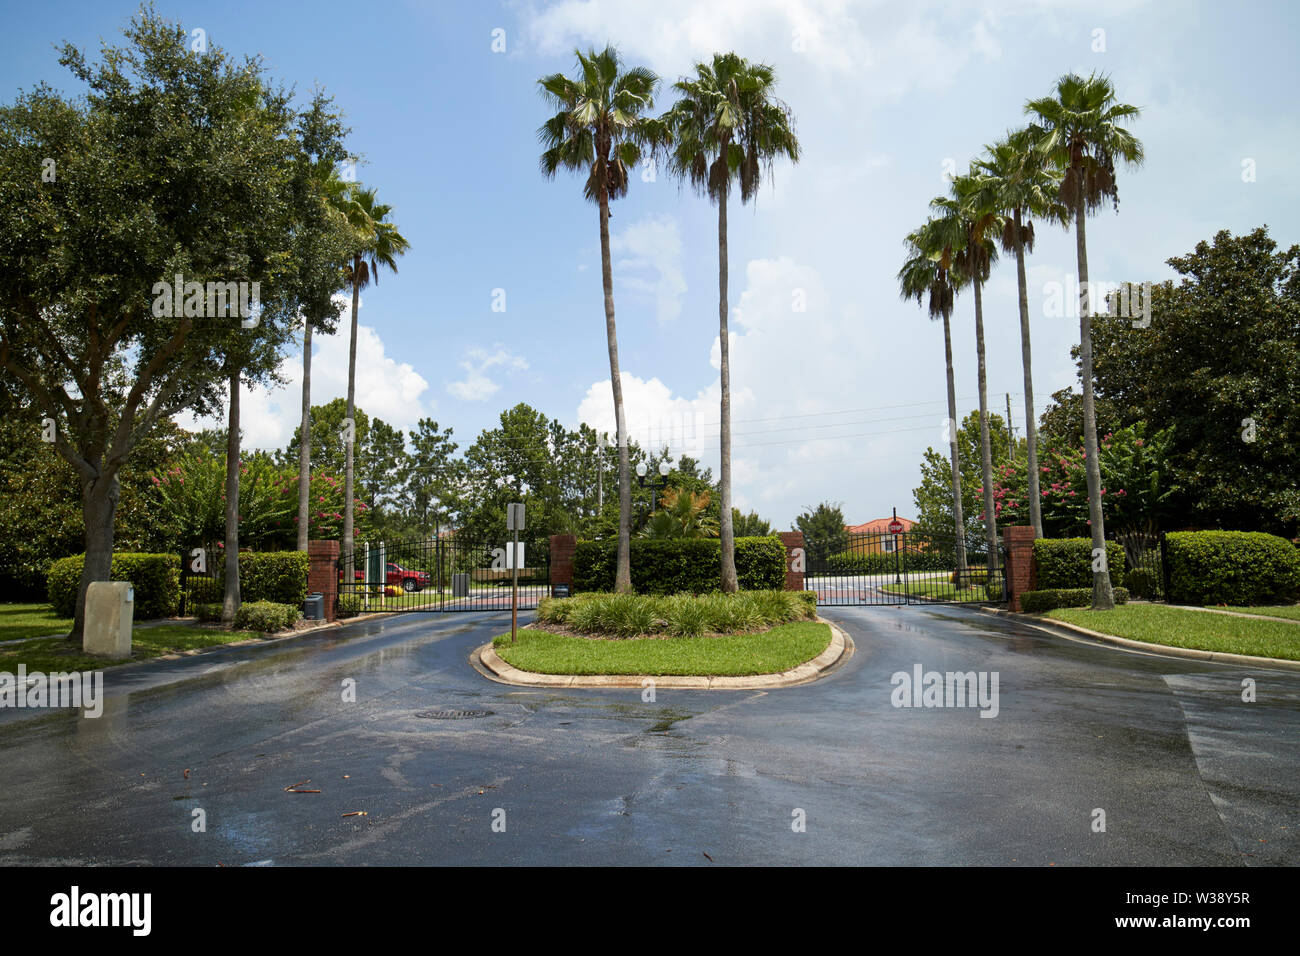 Ausfahrt zu einem Wohngebiet gated community in Florida USA Vereinigte Staaten von Amerika Stockfoto